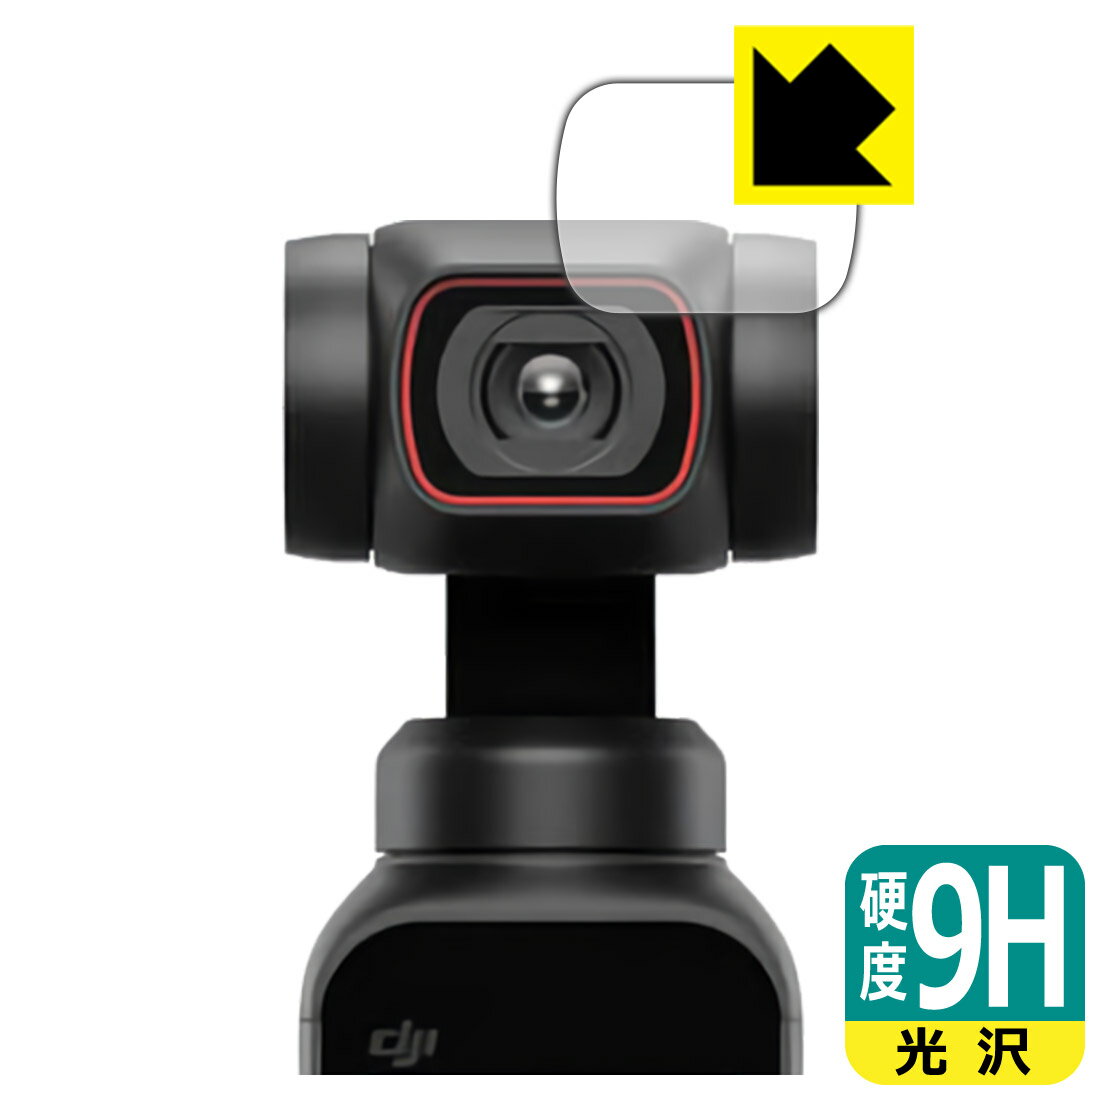 9H高硬度【光沢】保護フィルム DJI Pocket 2 (カメラレンズ部用) 日本製 自社製造直販